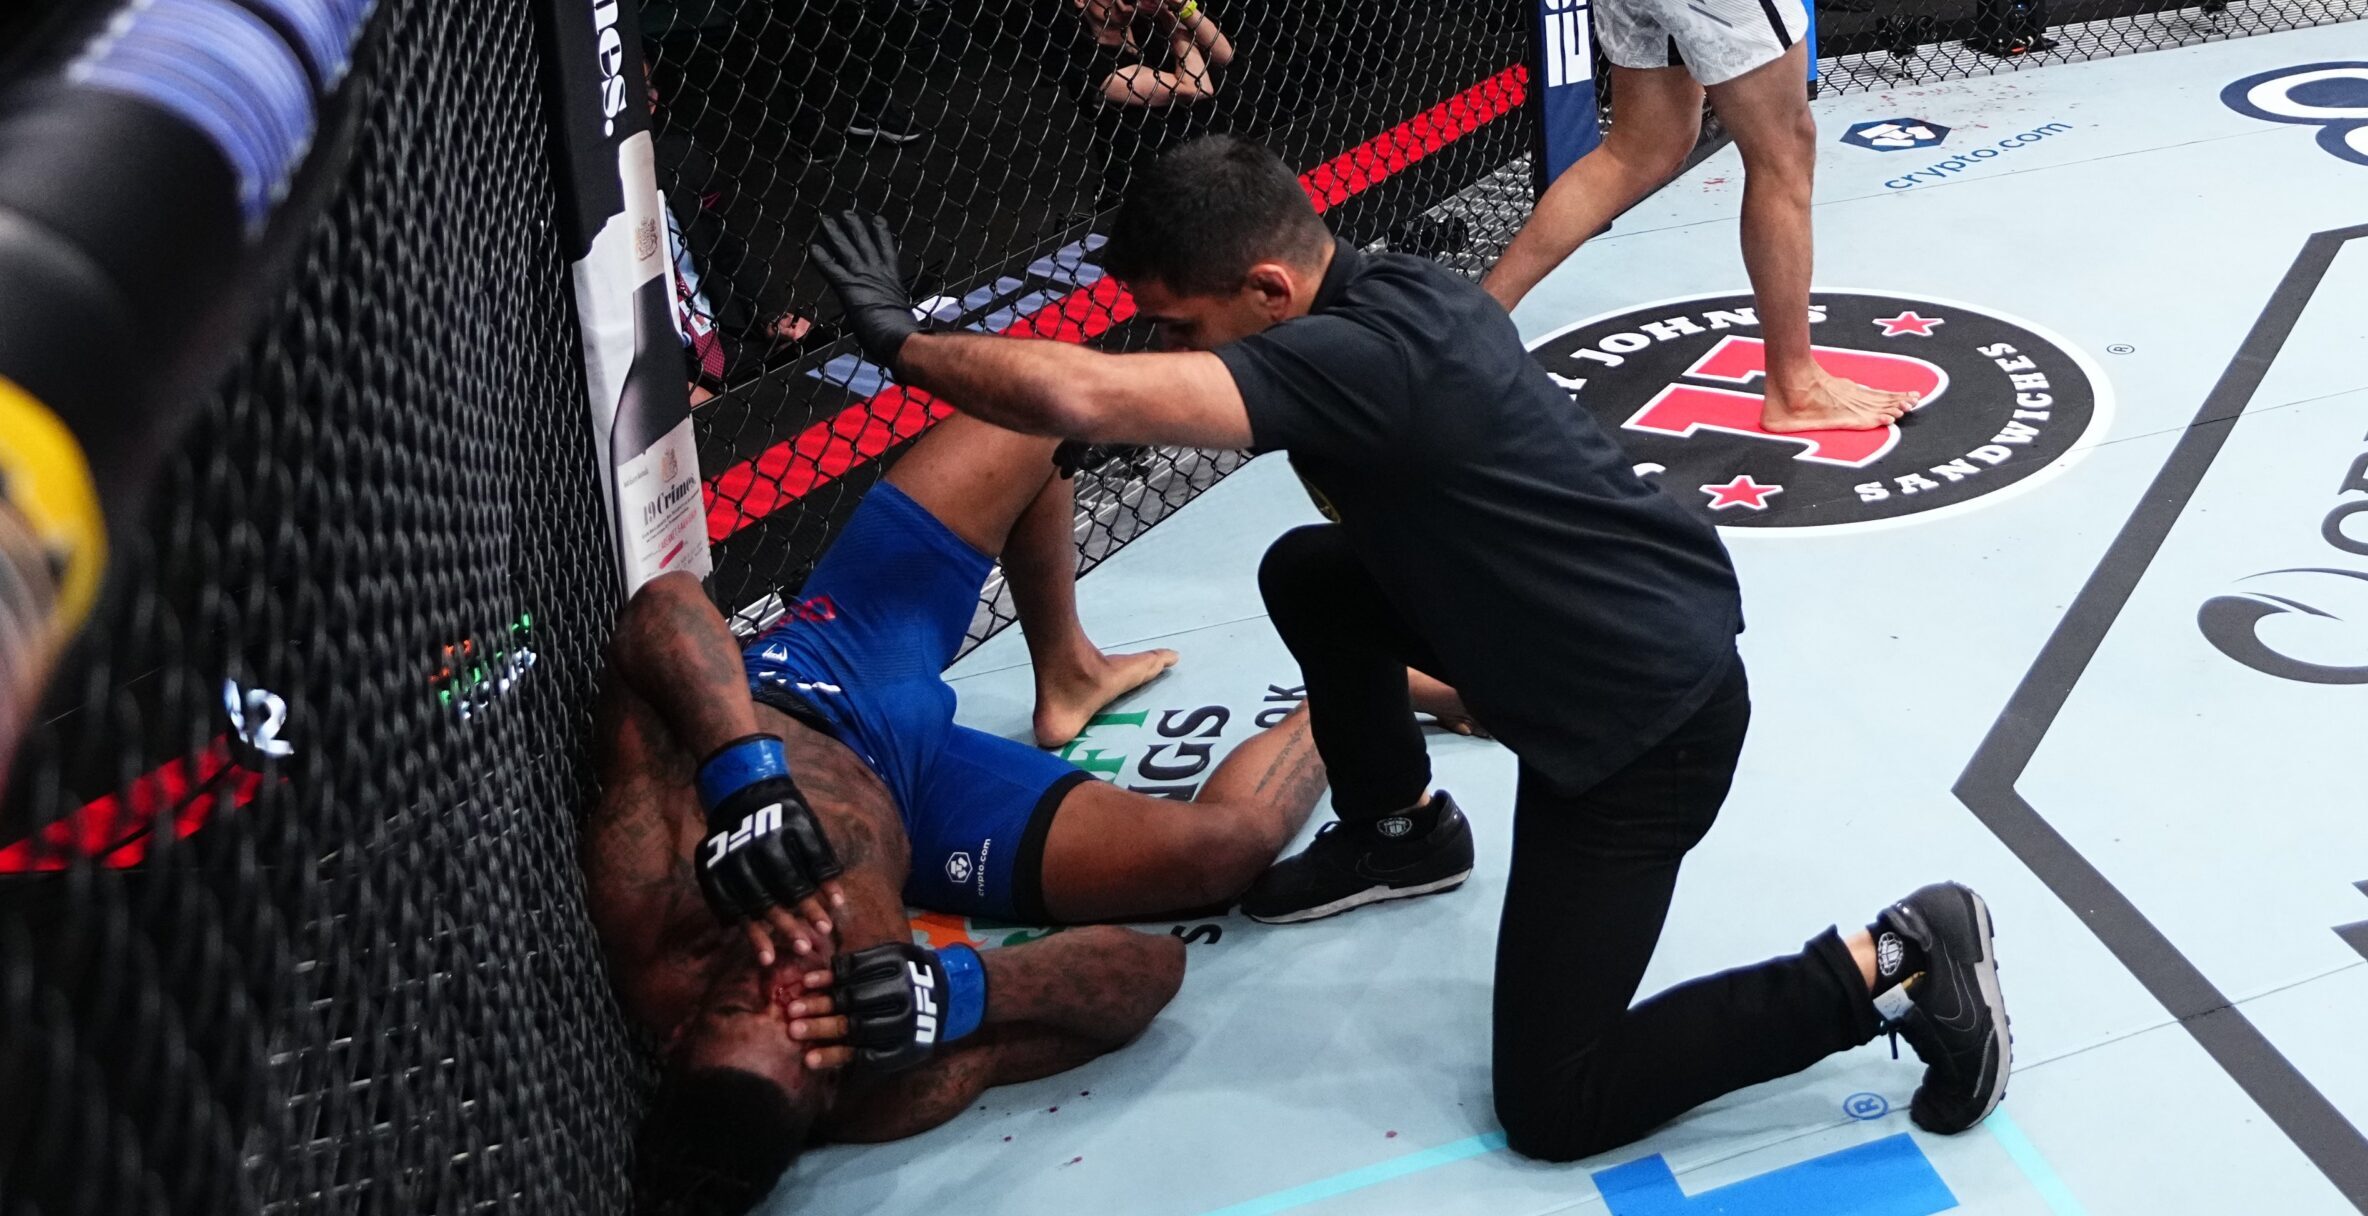 Lutador com passagem pela polícia é massacrado e nocauteado no UFC Atlantic City. Foto: Reprodução/Twitter UFC